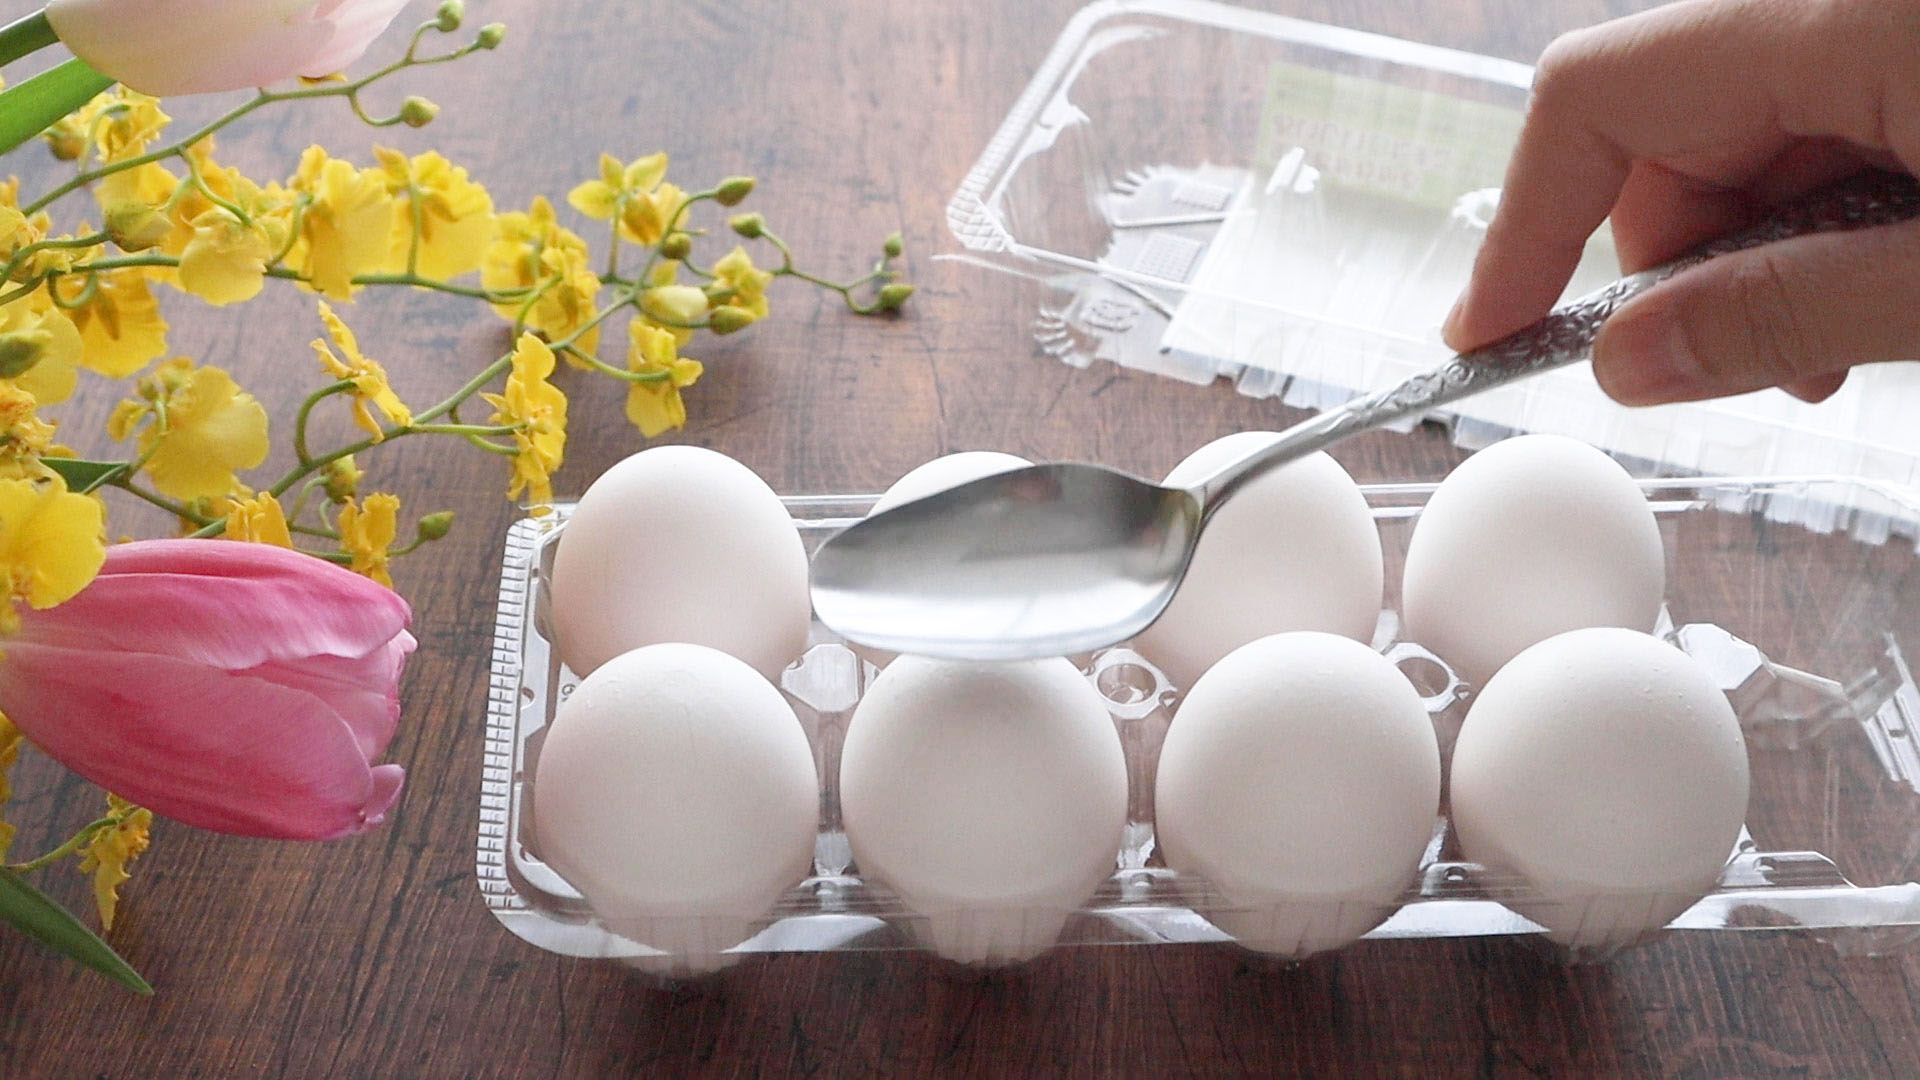 一番簡単な剥き方はコレ ゆで卵の殻むき 剥きやすい順に紹介 やまでら くみこ のレシピ